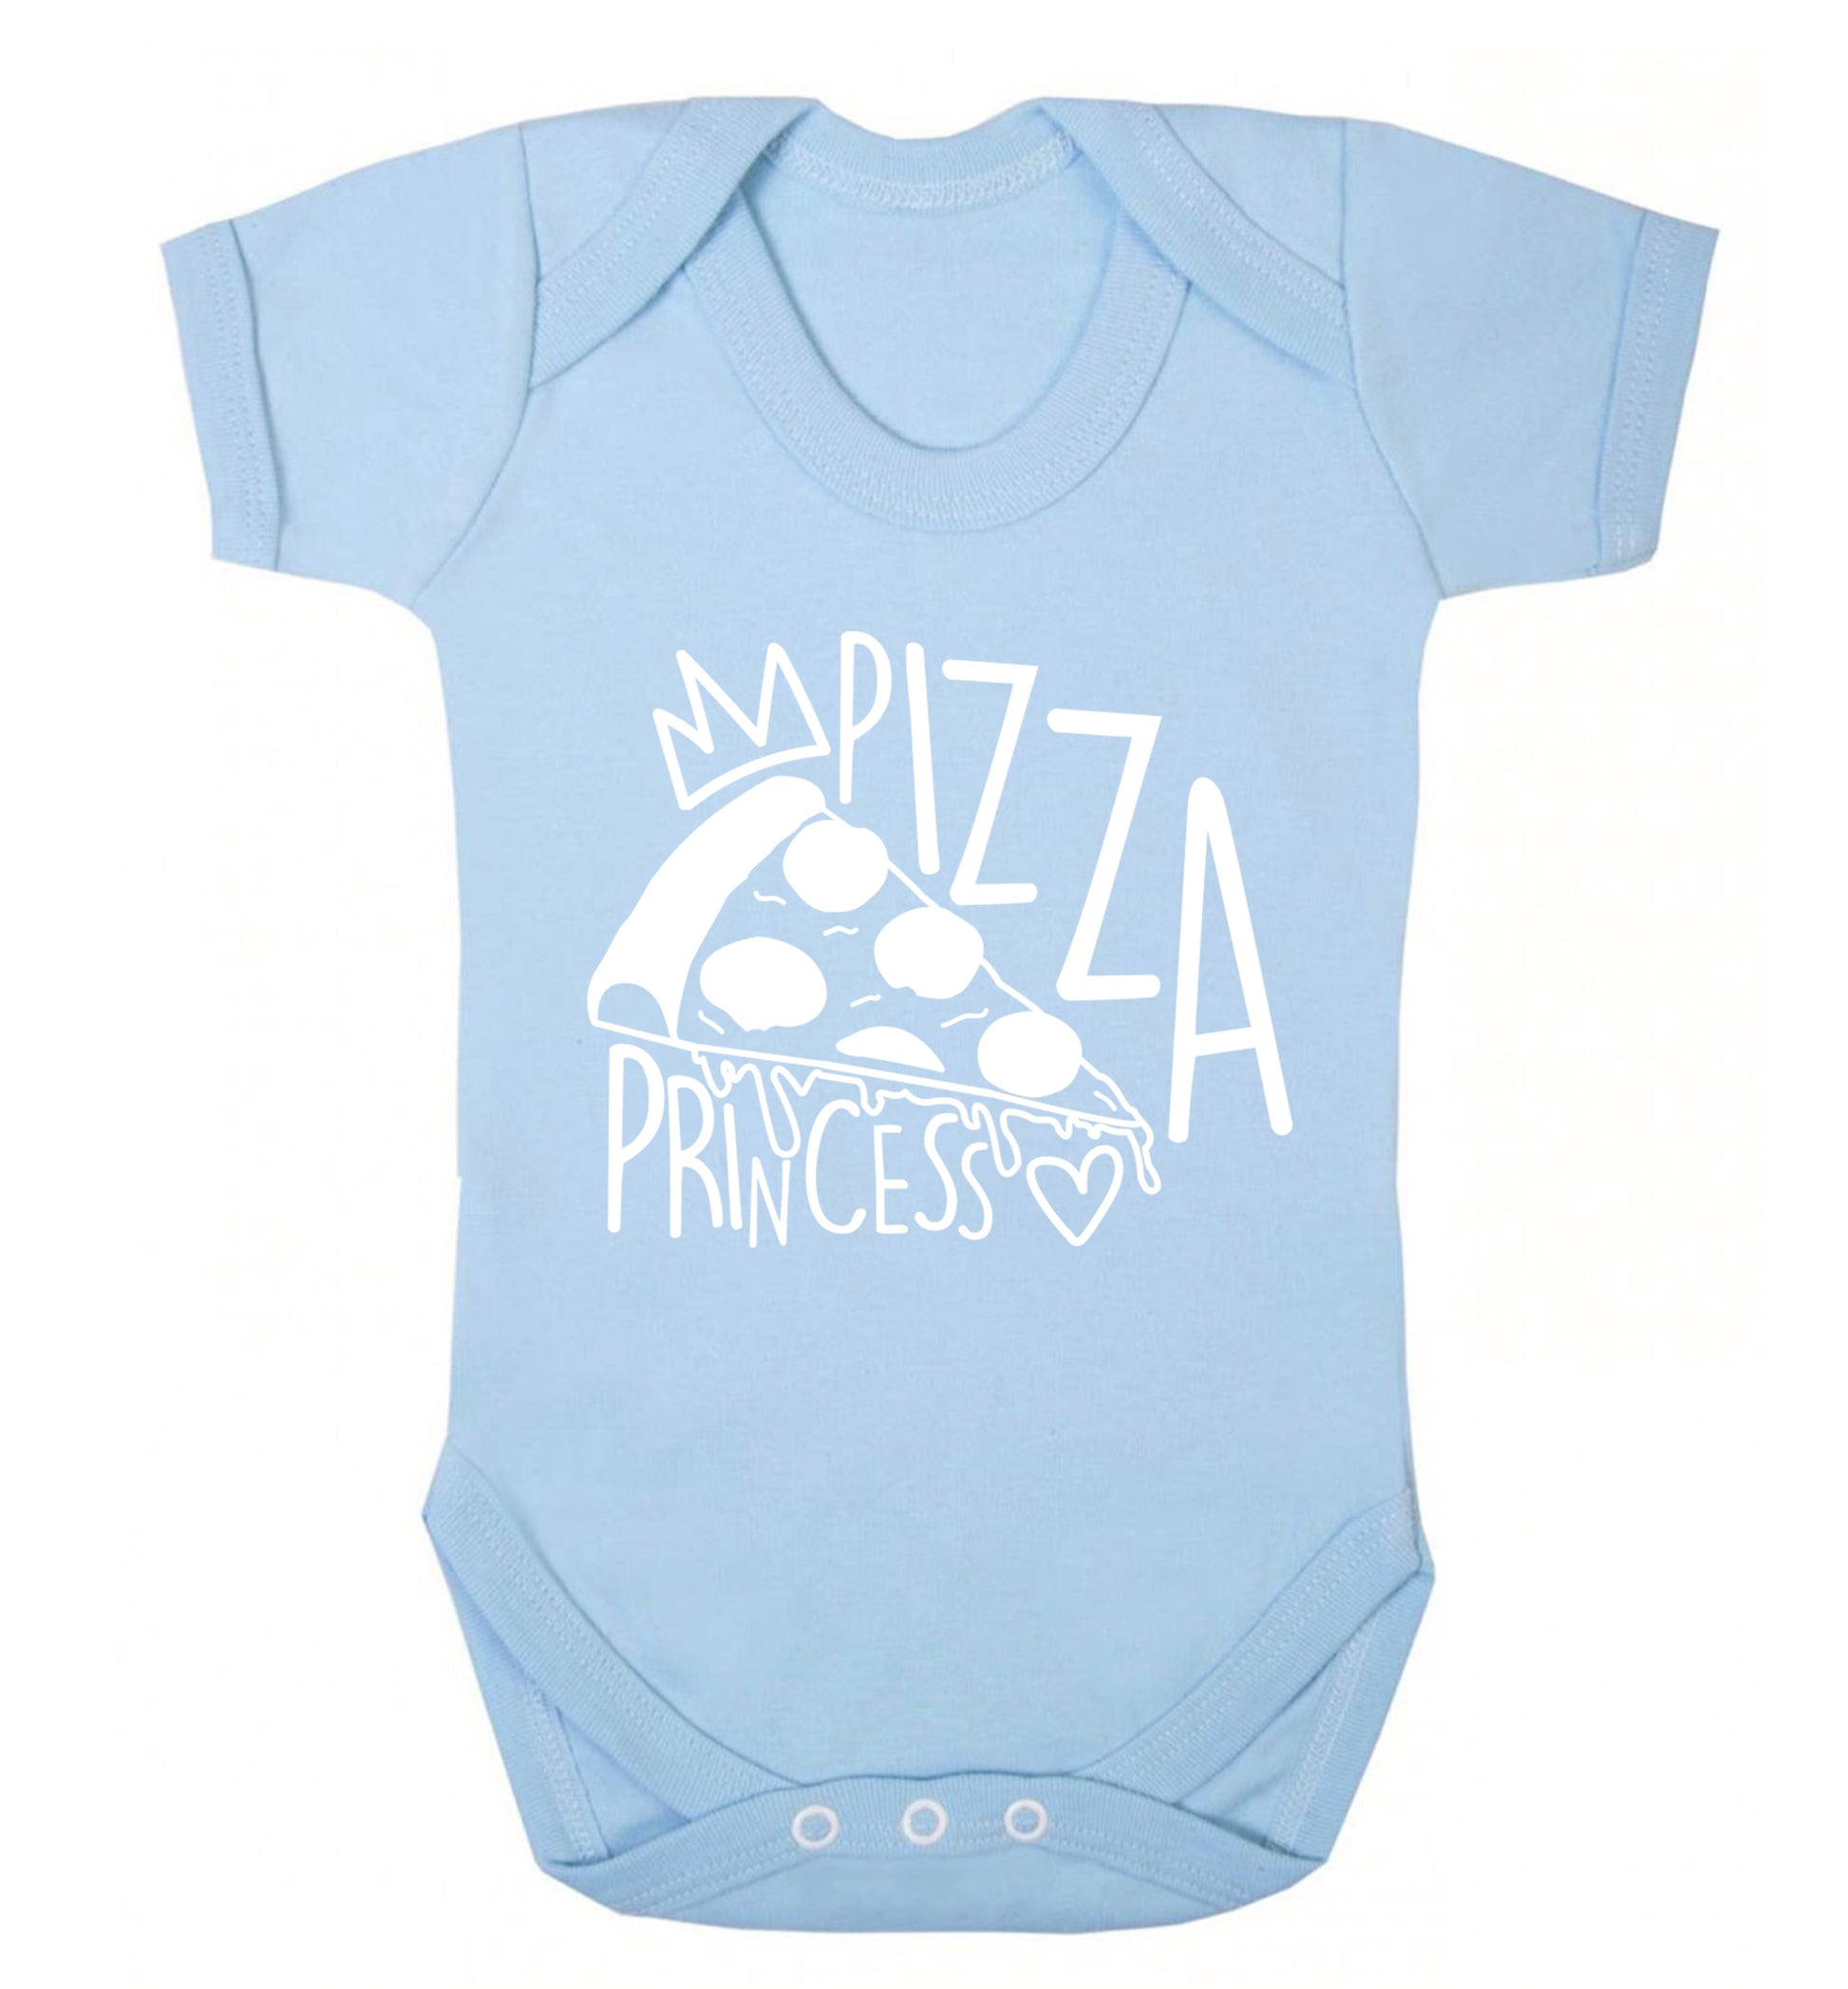 Pizza Princess Baby Vest pale blue 18-24 months